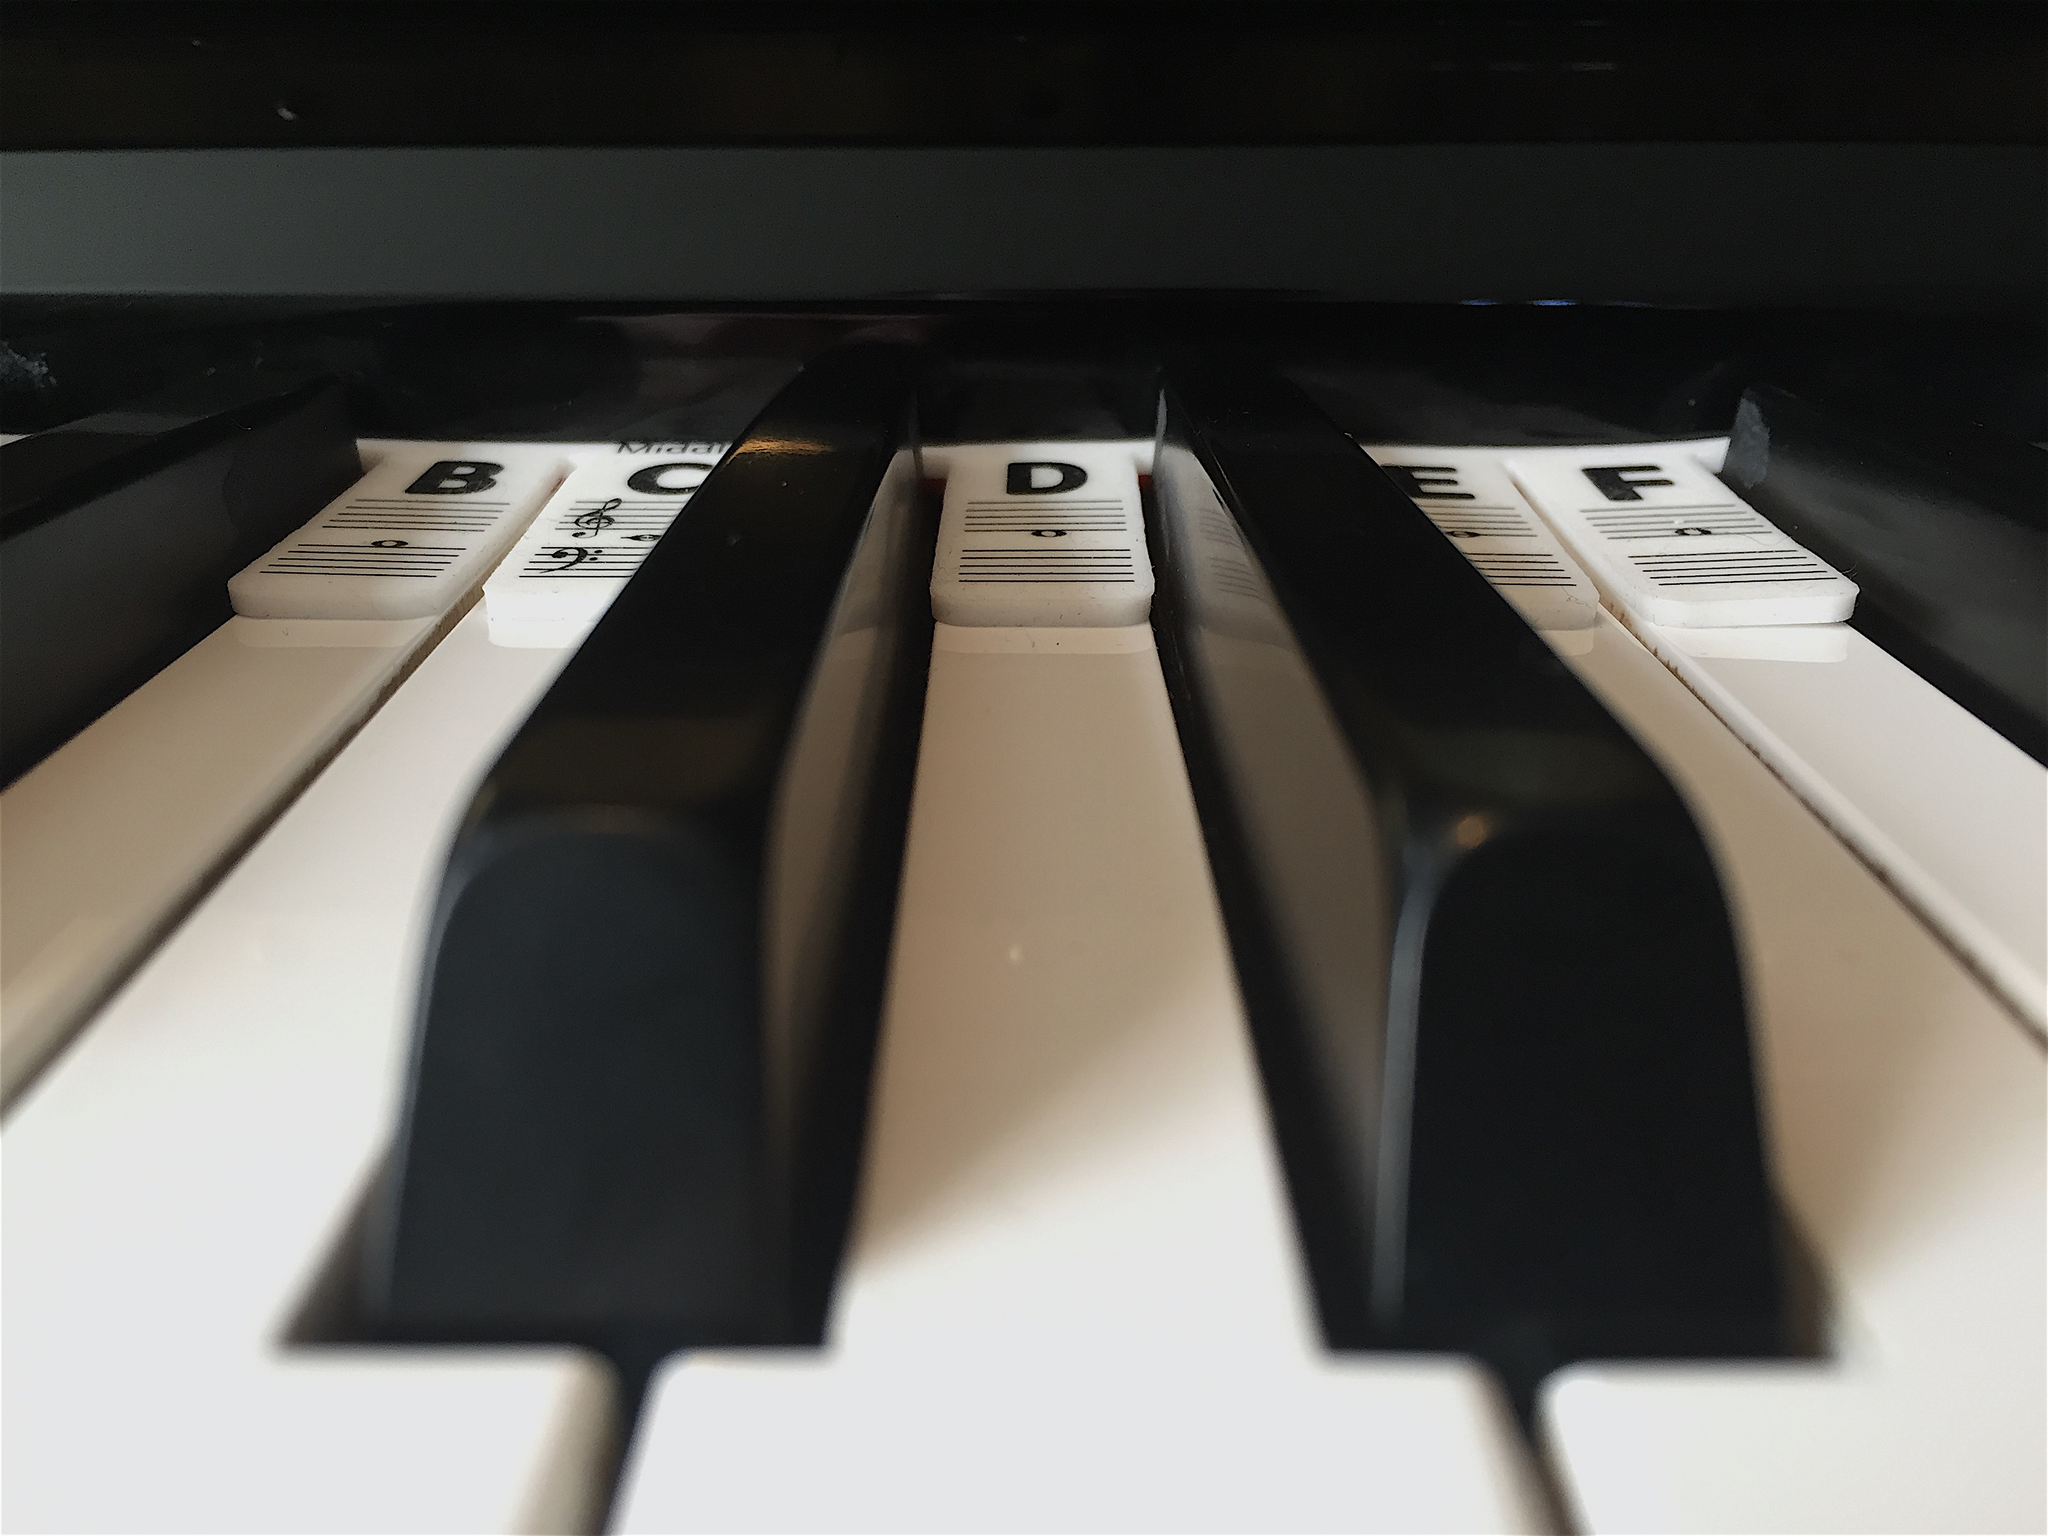 Silicone Piano Sticker Stickless Note Bar 61 Touches Piano